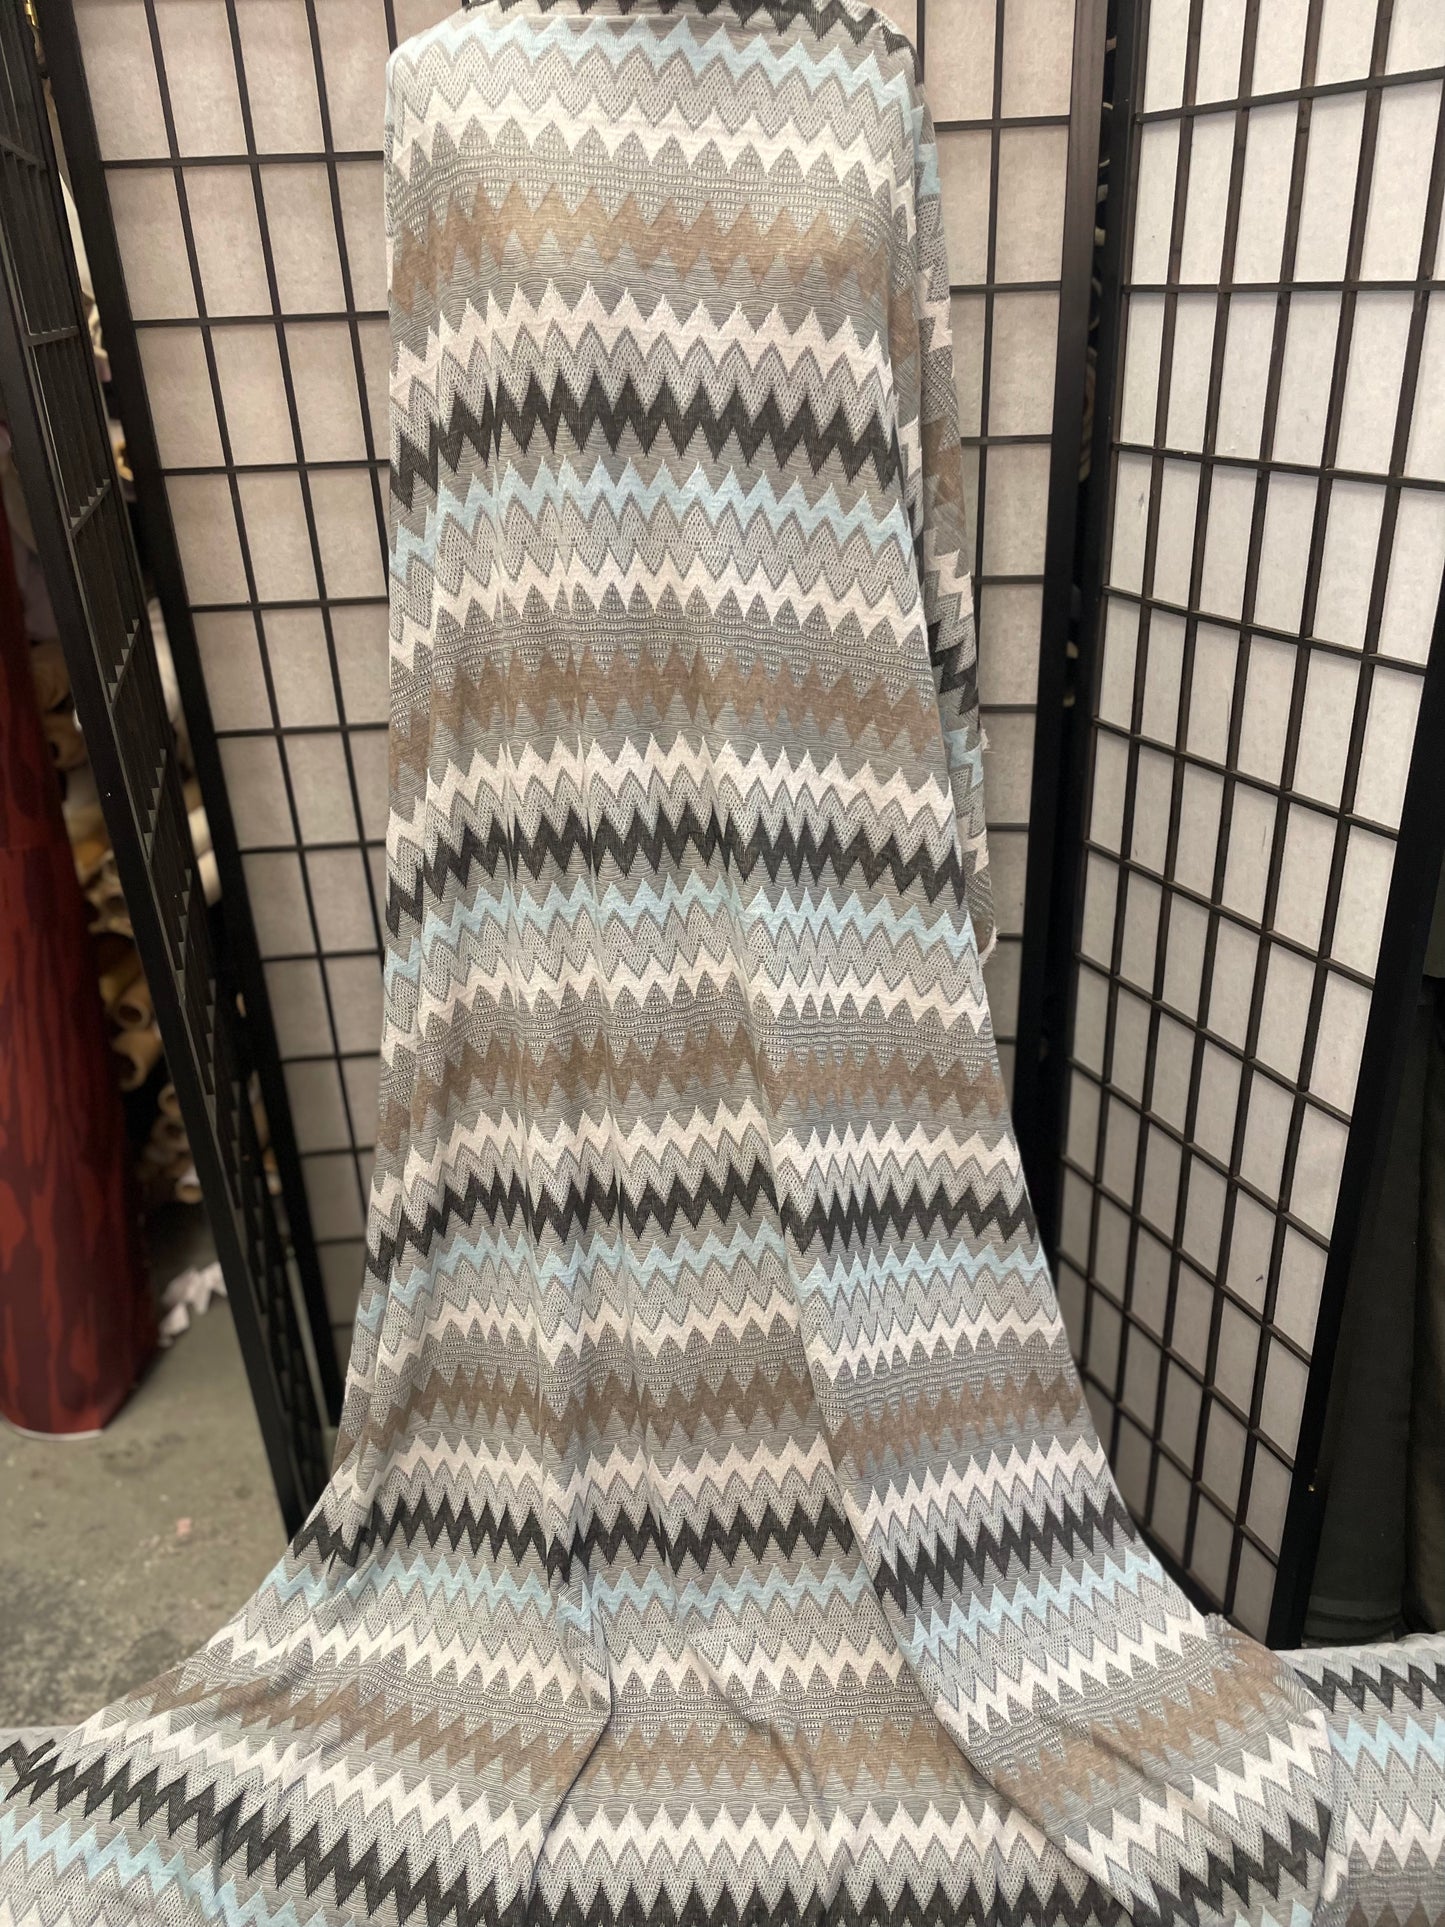 Chevron Poly Sweater Knit - Blue, Grey, White, Tan, Black